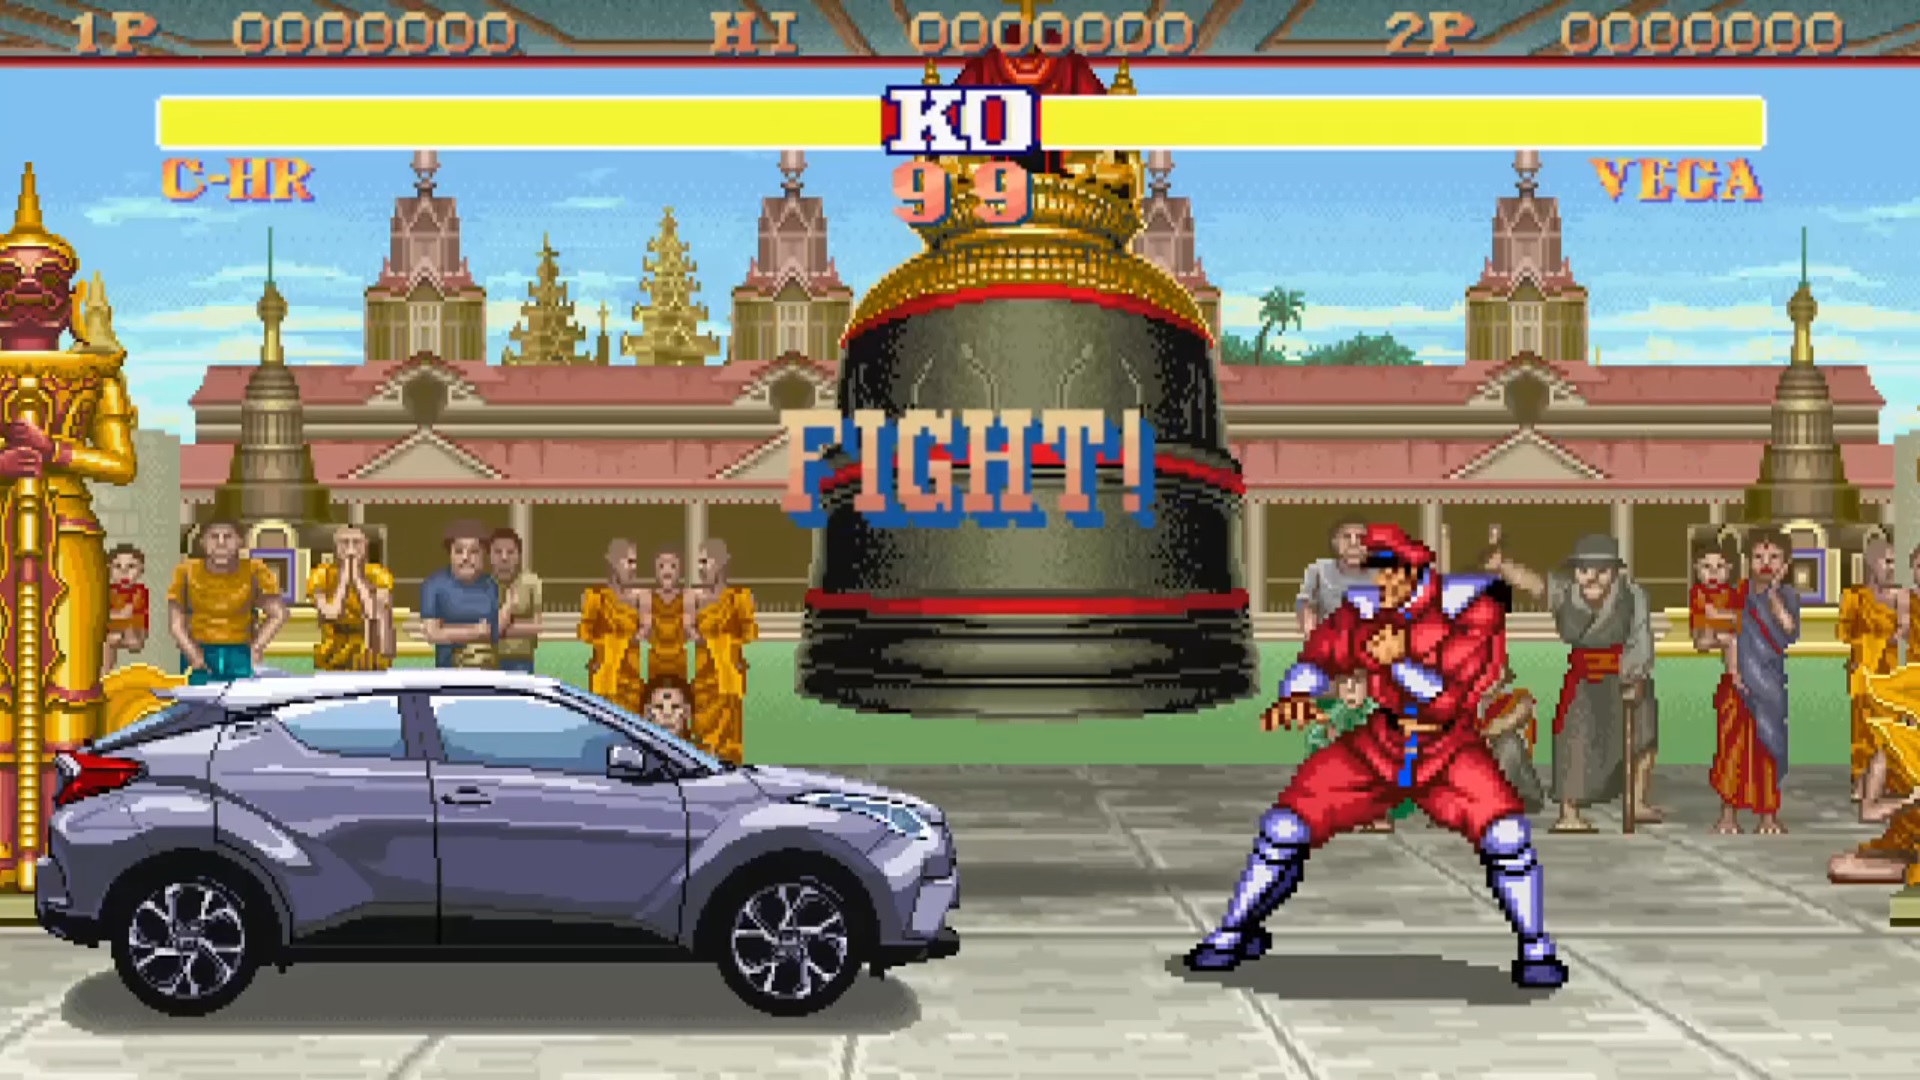 มิติใหม่แห่งโฆษณา Toyota ญี่ปุ่นโปรโมทรถด้วยเกม Street Fighter II มาแบบสุดคูล!!